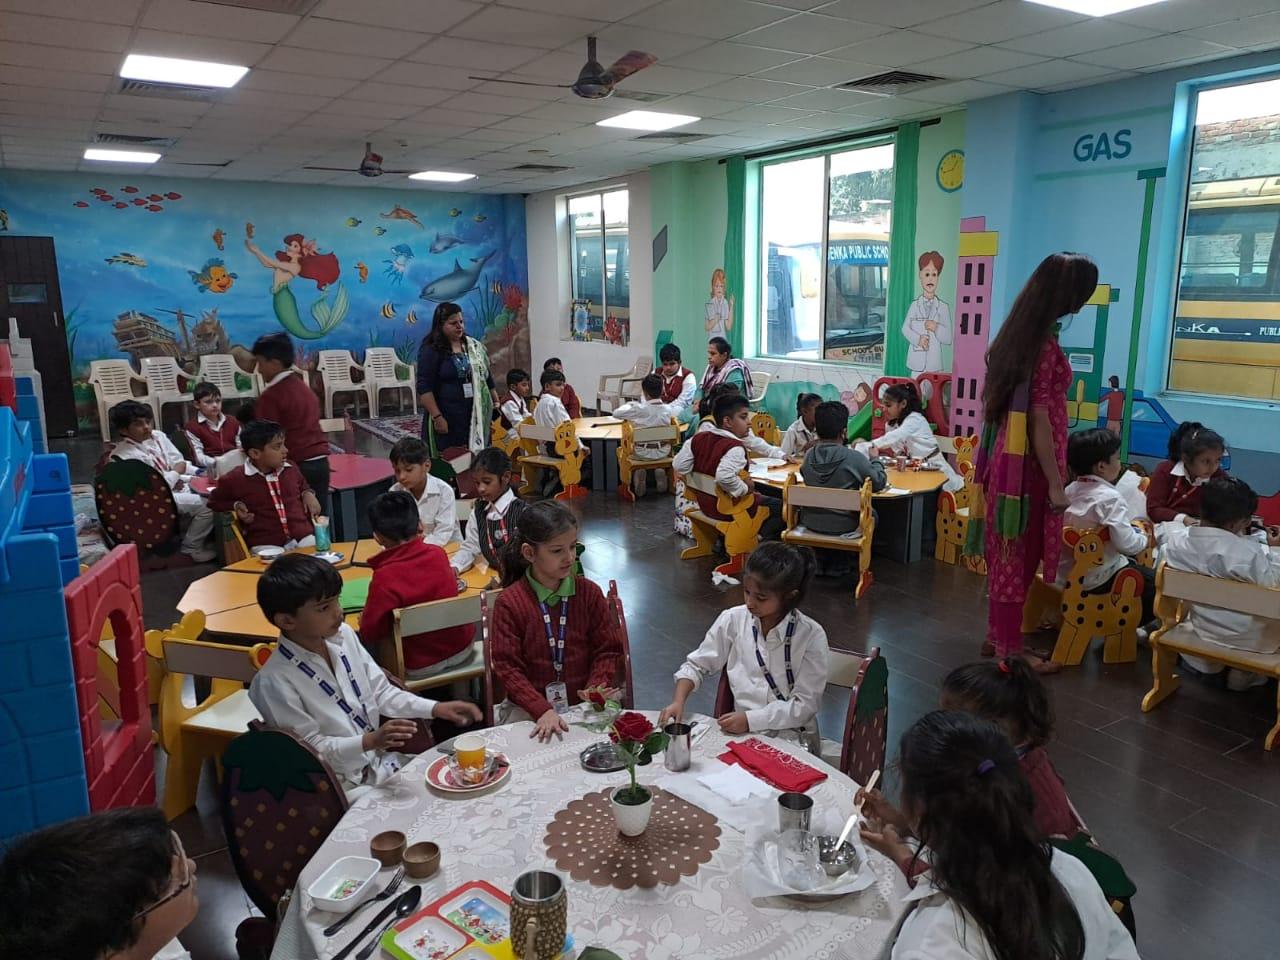 जीडी गोयनका पब्लिक स्कूल में टेबल मैनर्स के बारे में बच्चों के लिए कार्यशाला का आयोजन